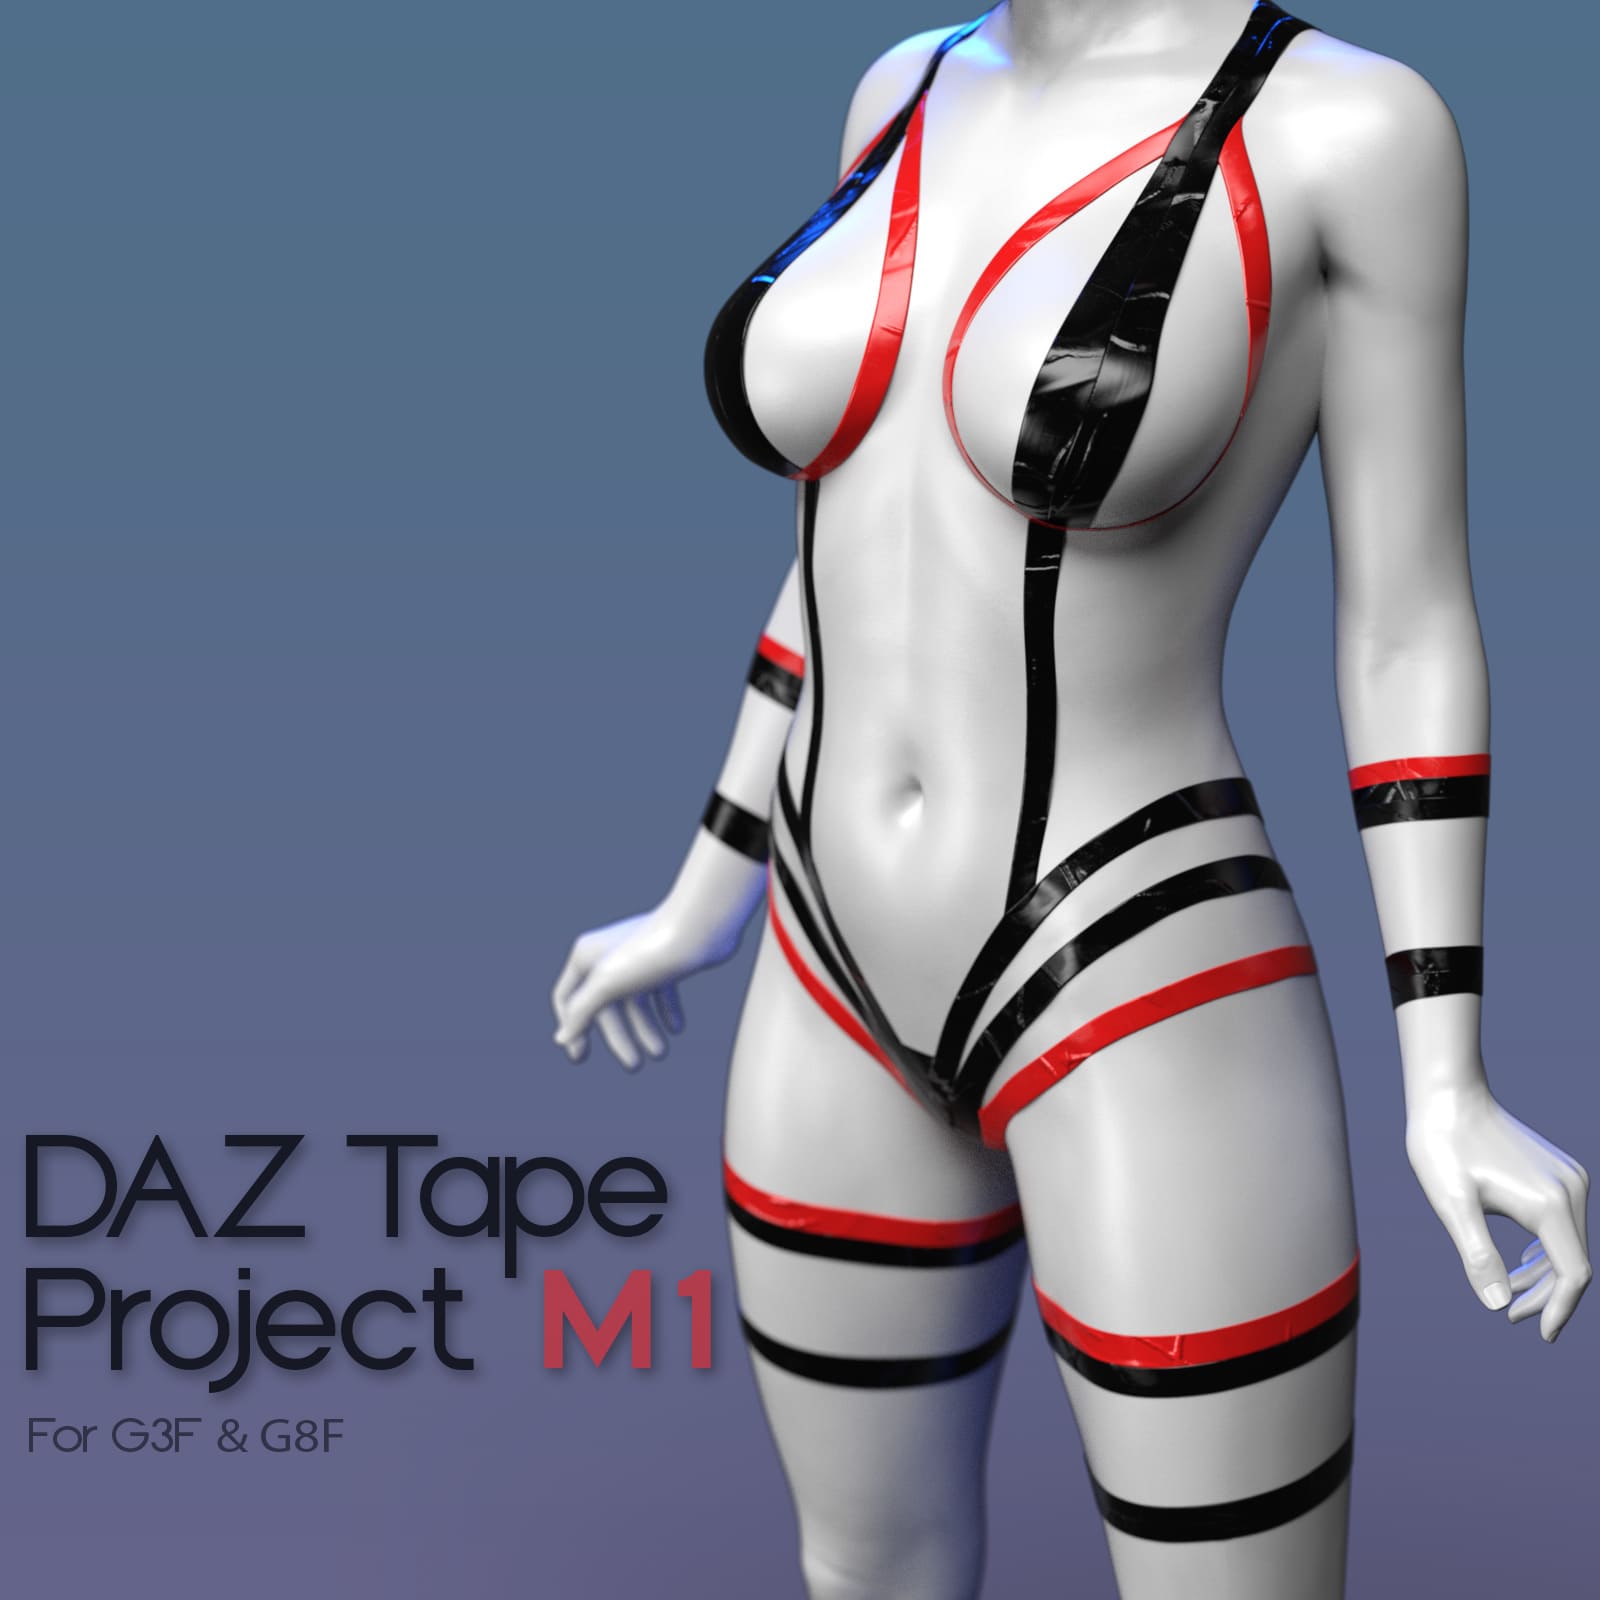 Daz Tape Project M1_DAZ3D下载站